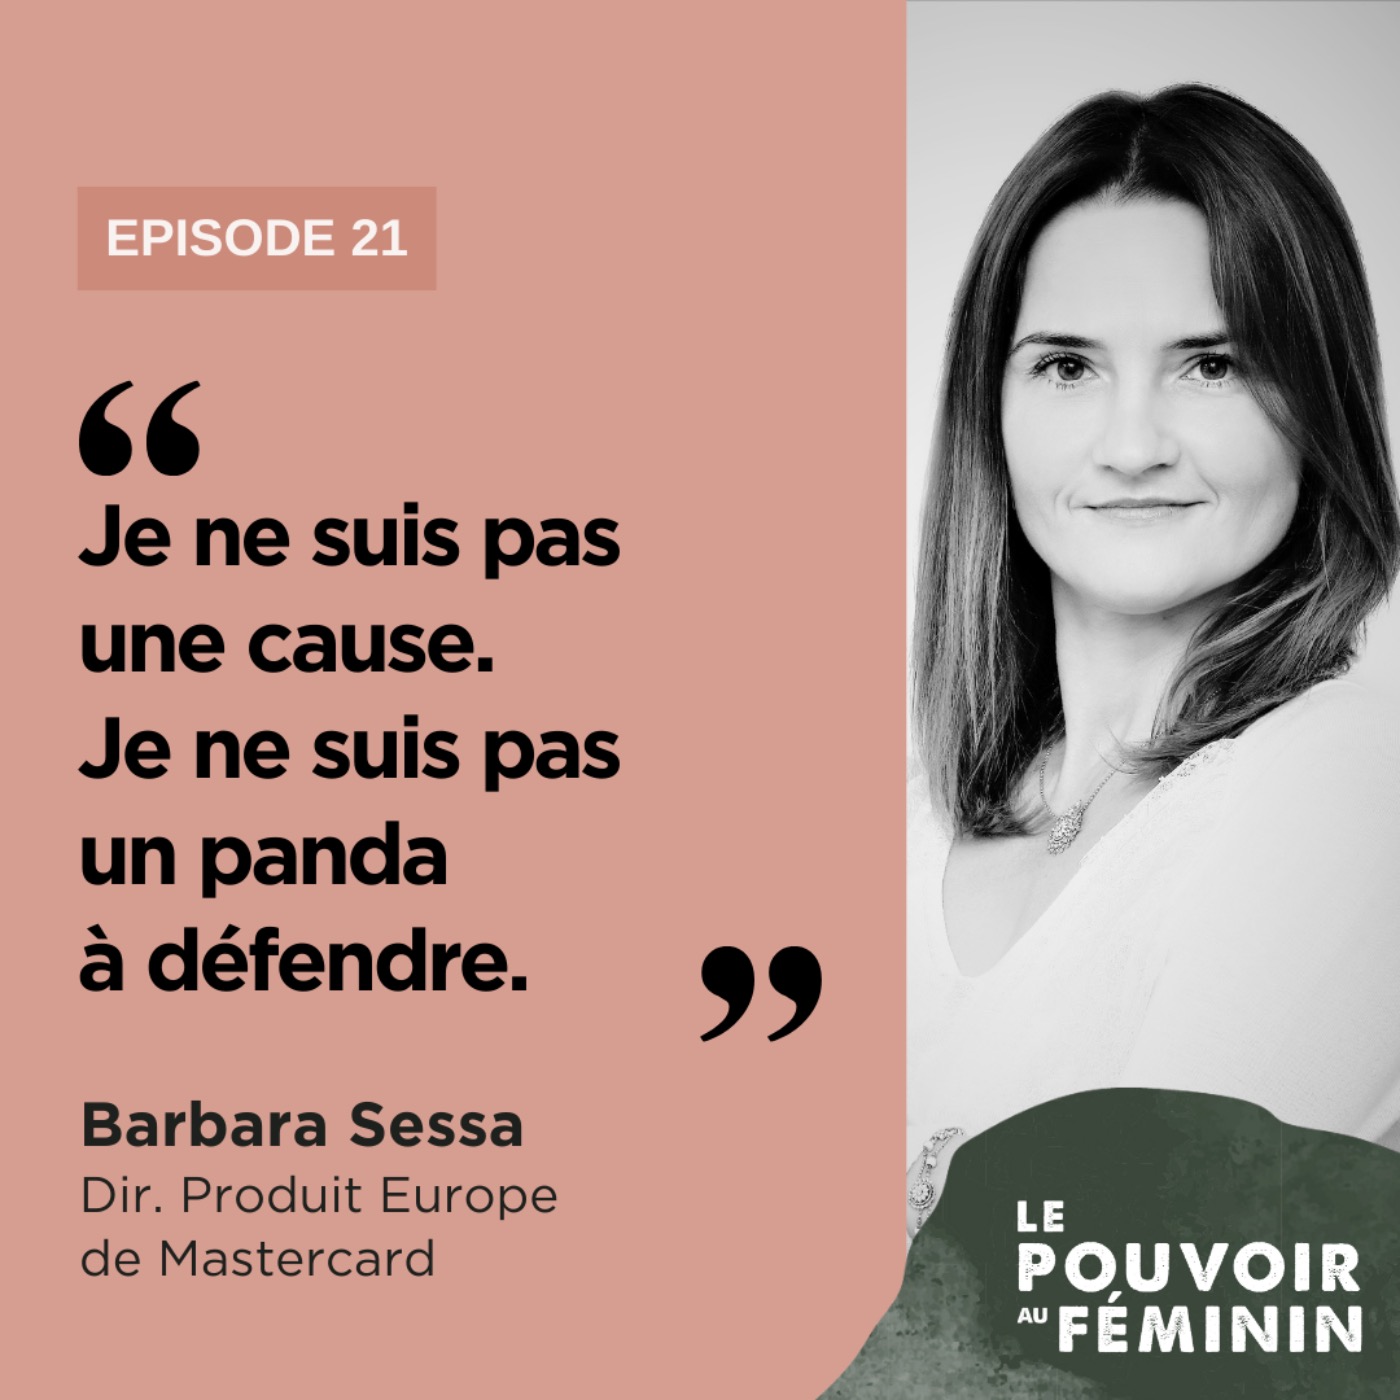 Babara Sessa, Dir. Produit Europe de Mastercard - "Je ne suis pas une cause. Je ne suis pas un panda à défendre. "